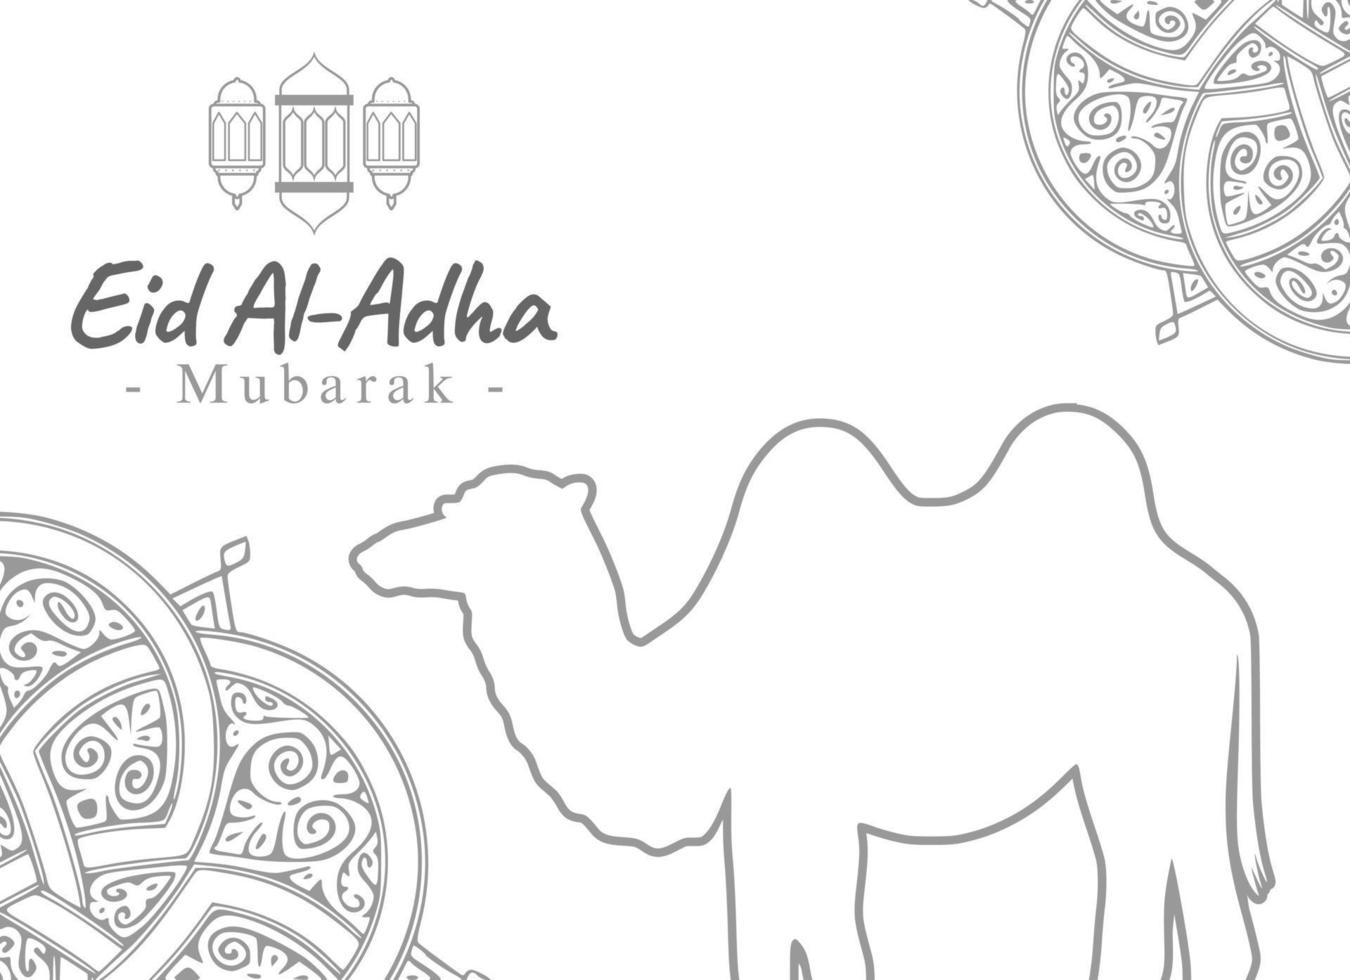 ontwerp vectorillustratie eid adha mubarak met schetsstijl compleet met dierlijke illustratie. geschikt voor wenskaart, poster en banner. vector